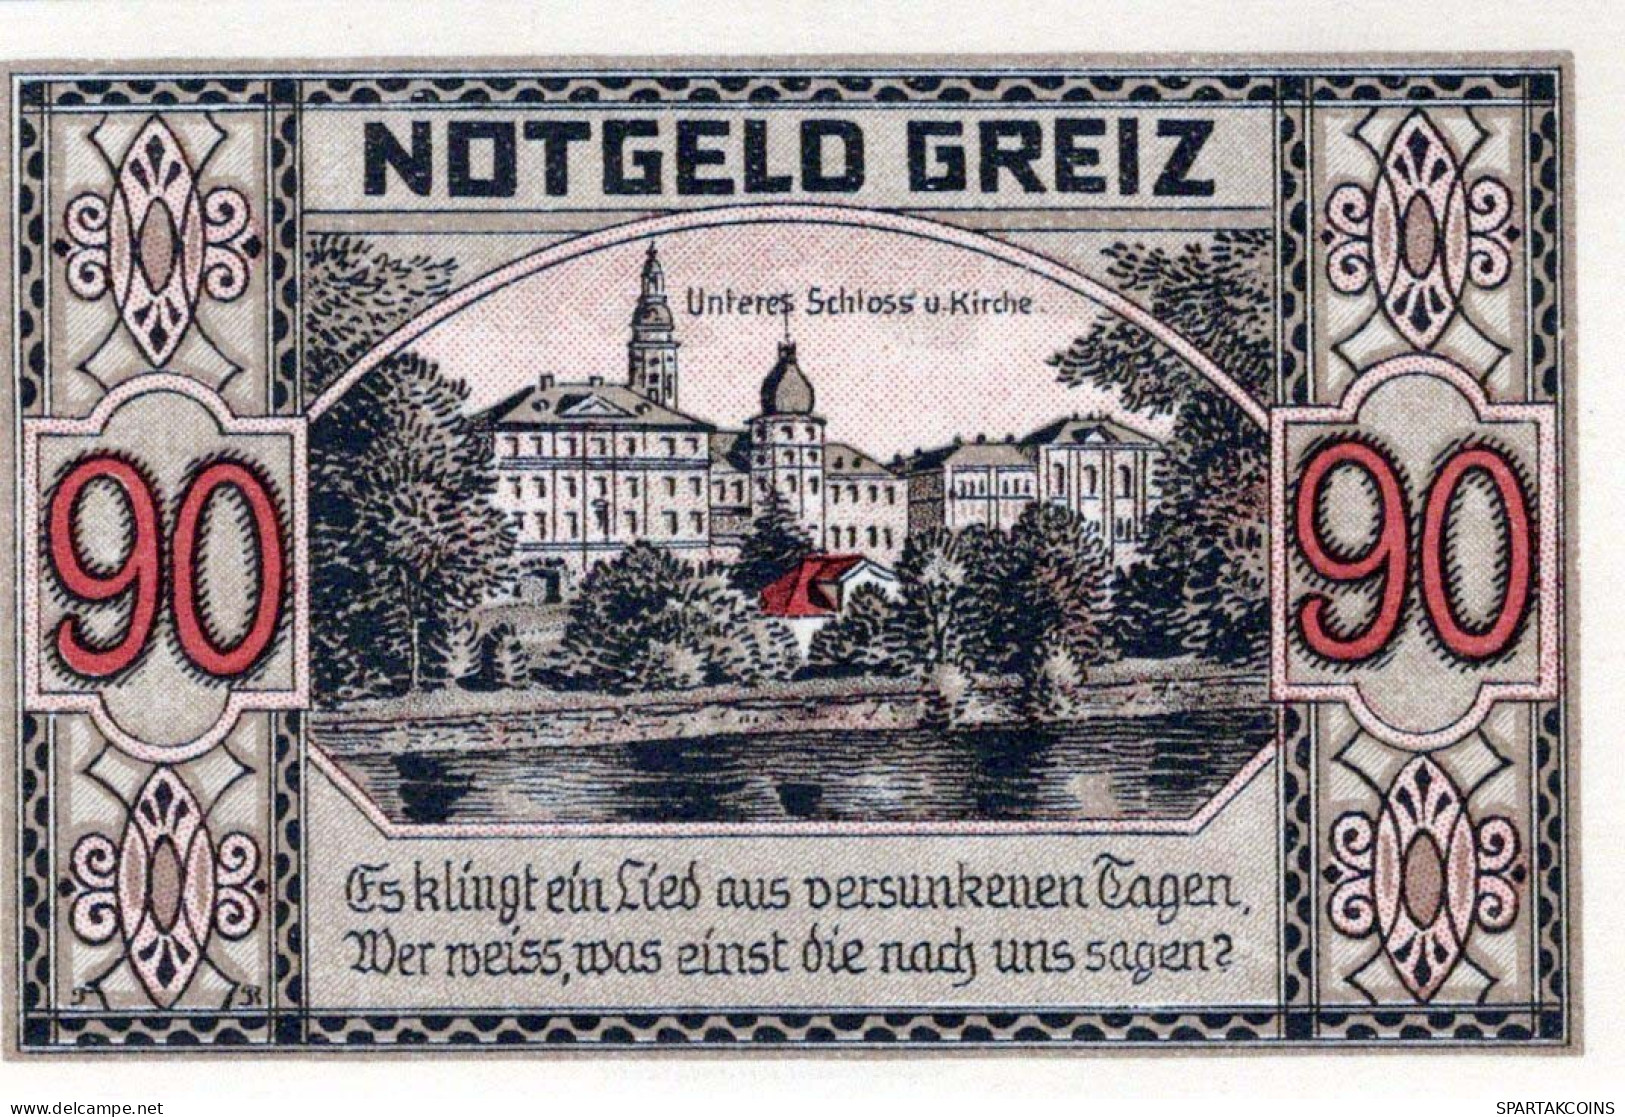 90 PFENNIG 1921 Stadt GREIZ Thuringia UNC DEUTSCHLAND Notgeld Banknote #PH700 - [11] Local Banknote Issues